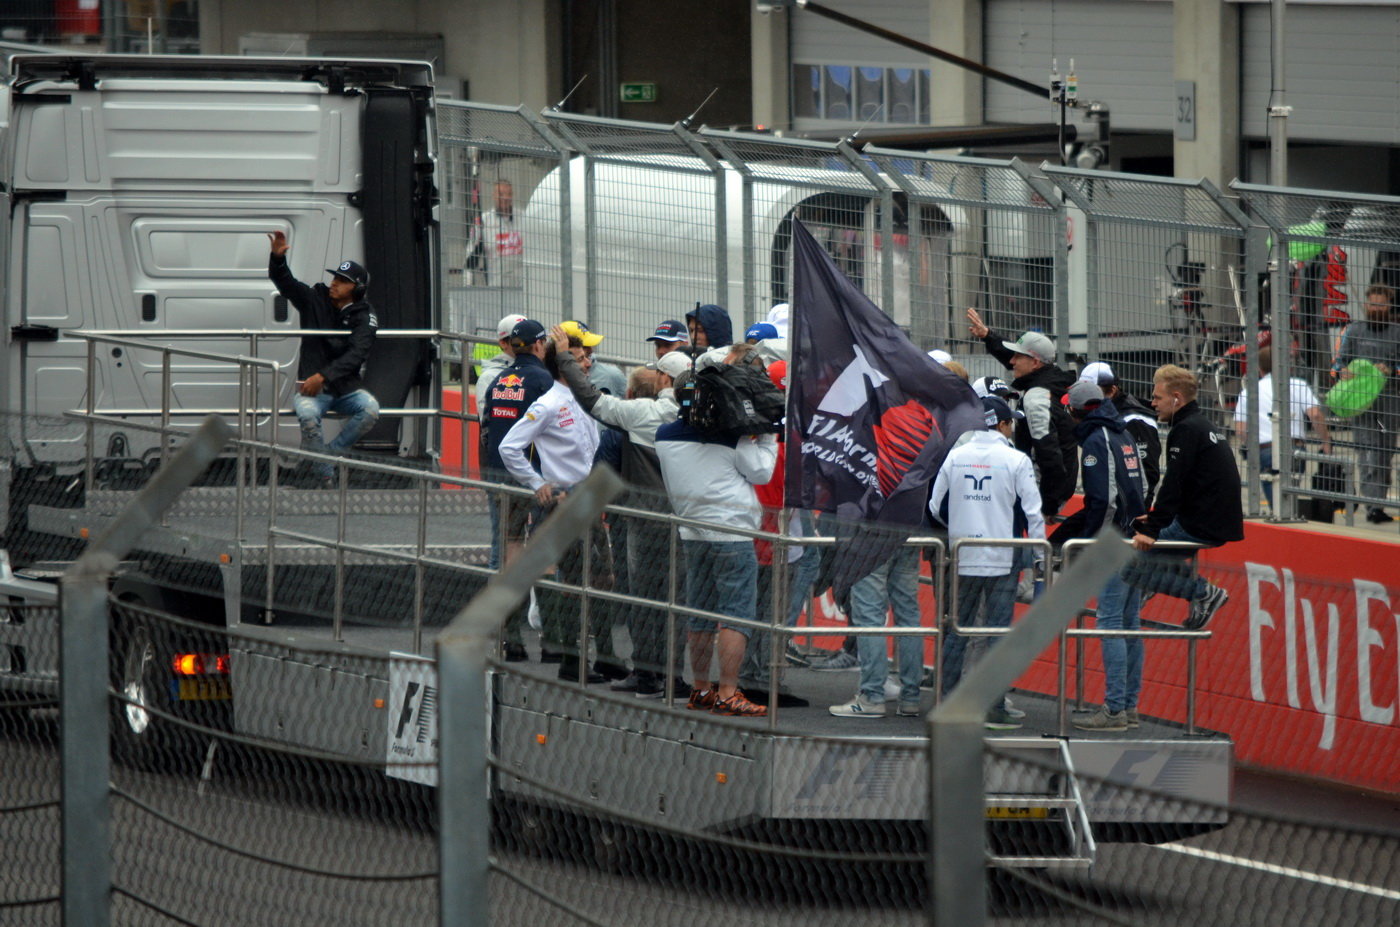 GP Rakouska (Red Bull Ring)